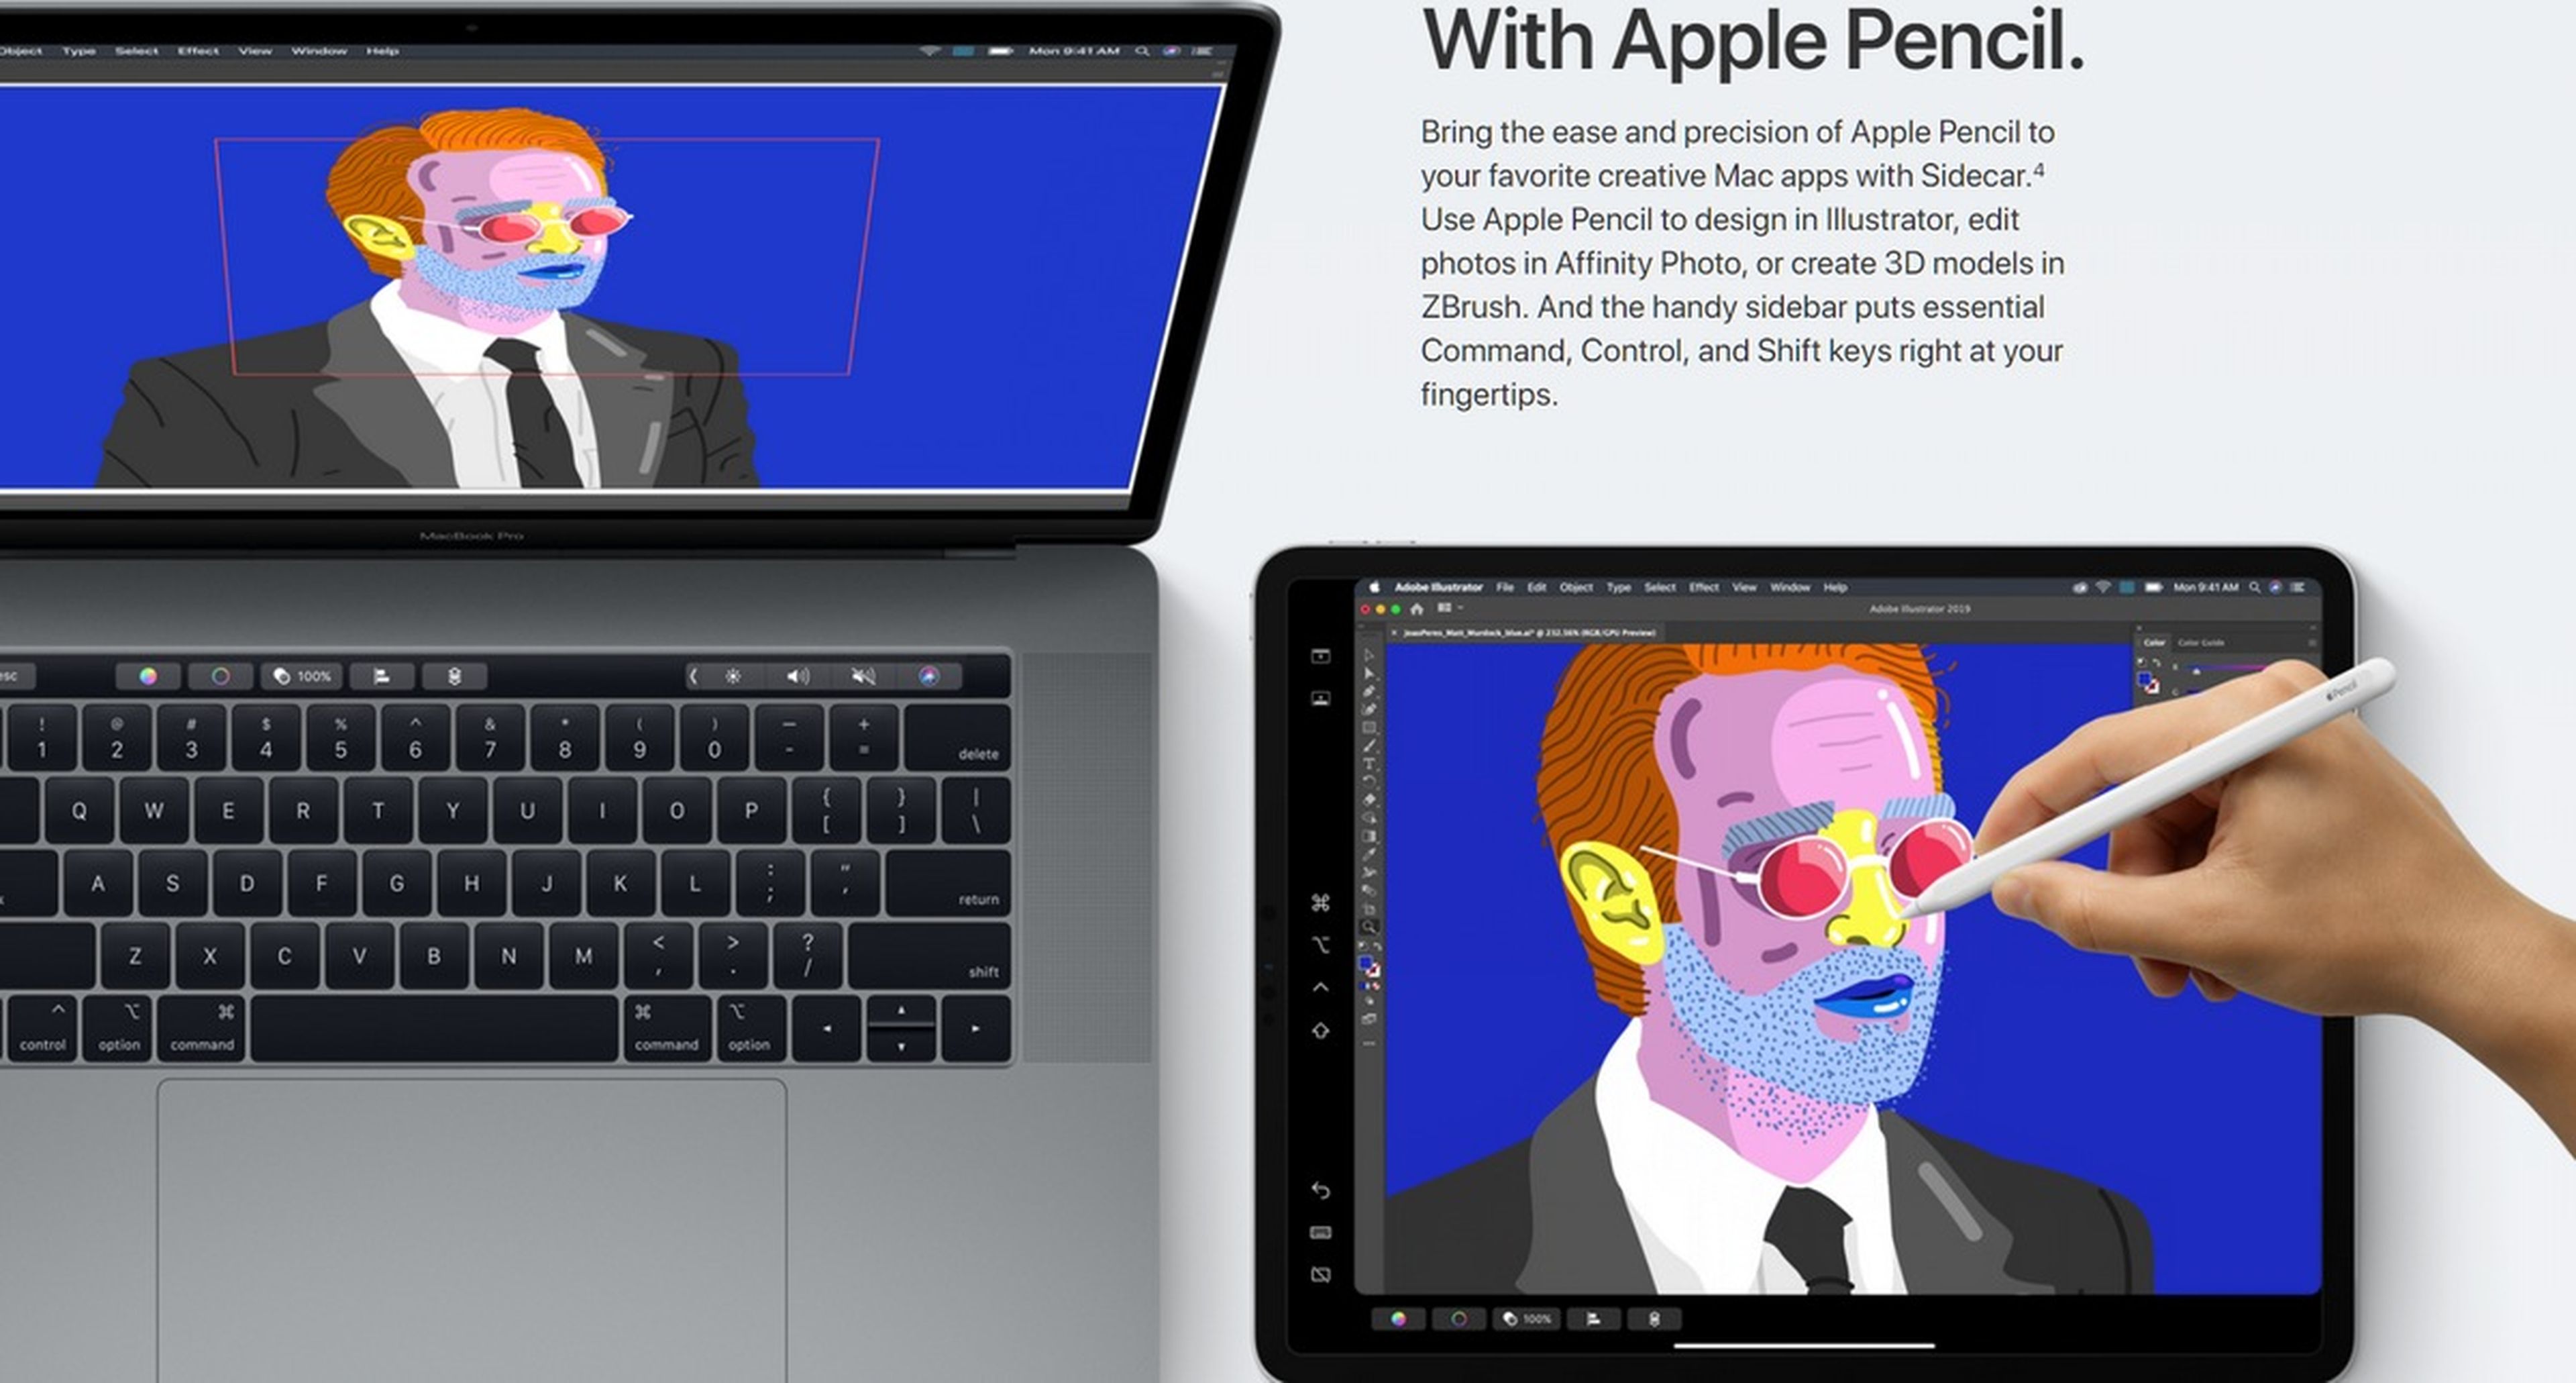 MacOS Catalina: adiós a iTunes, doble pantalla, y apps de iPad nativas